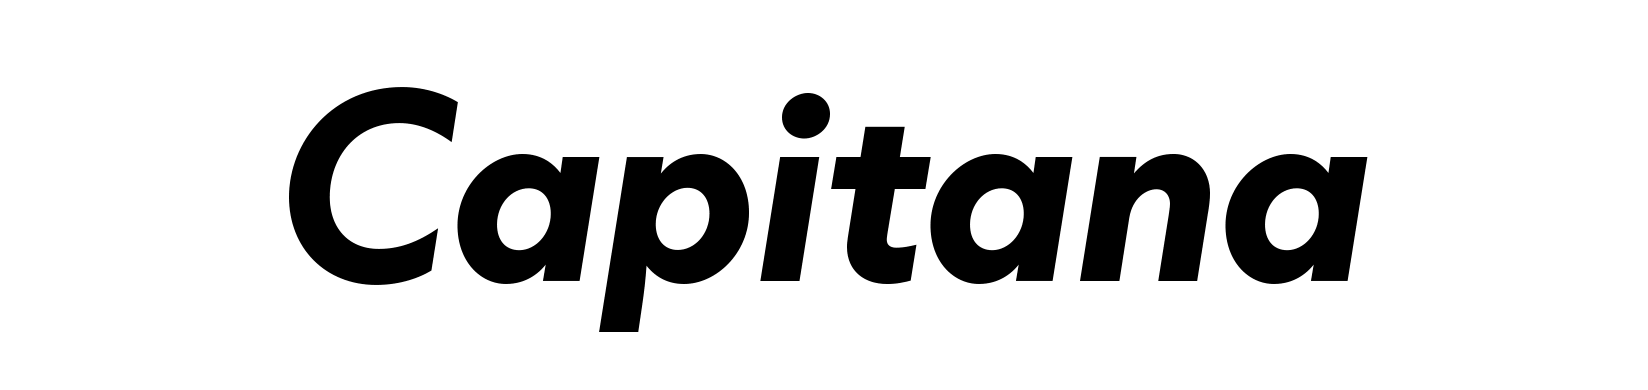 Capitana Typeface